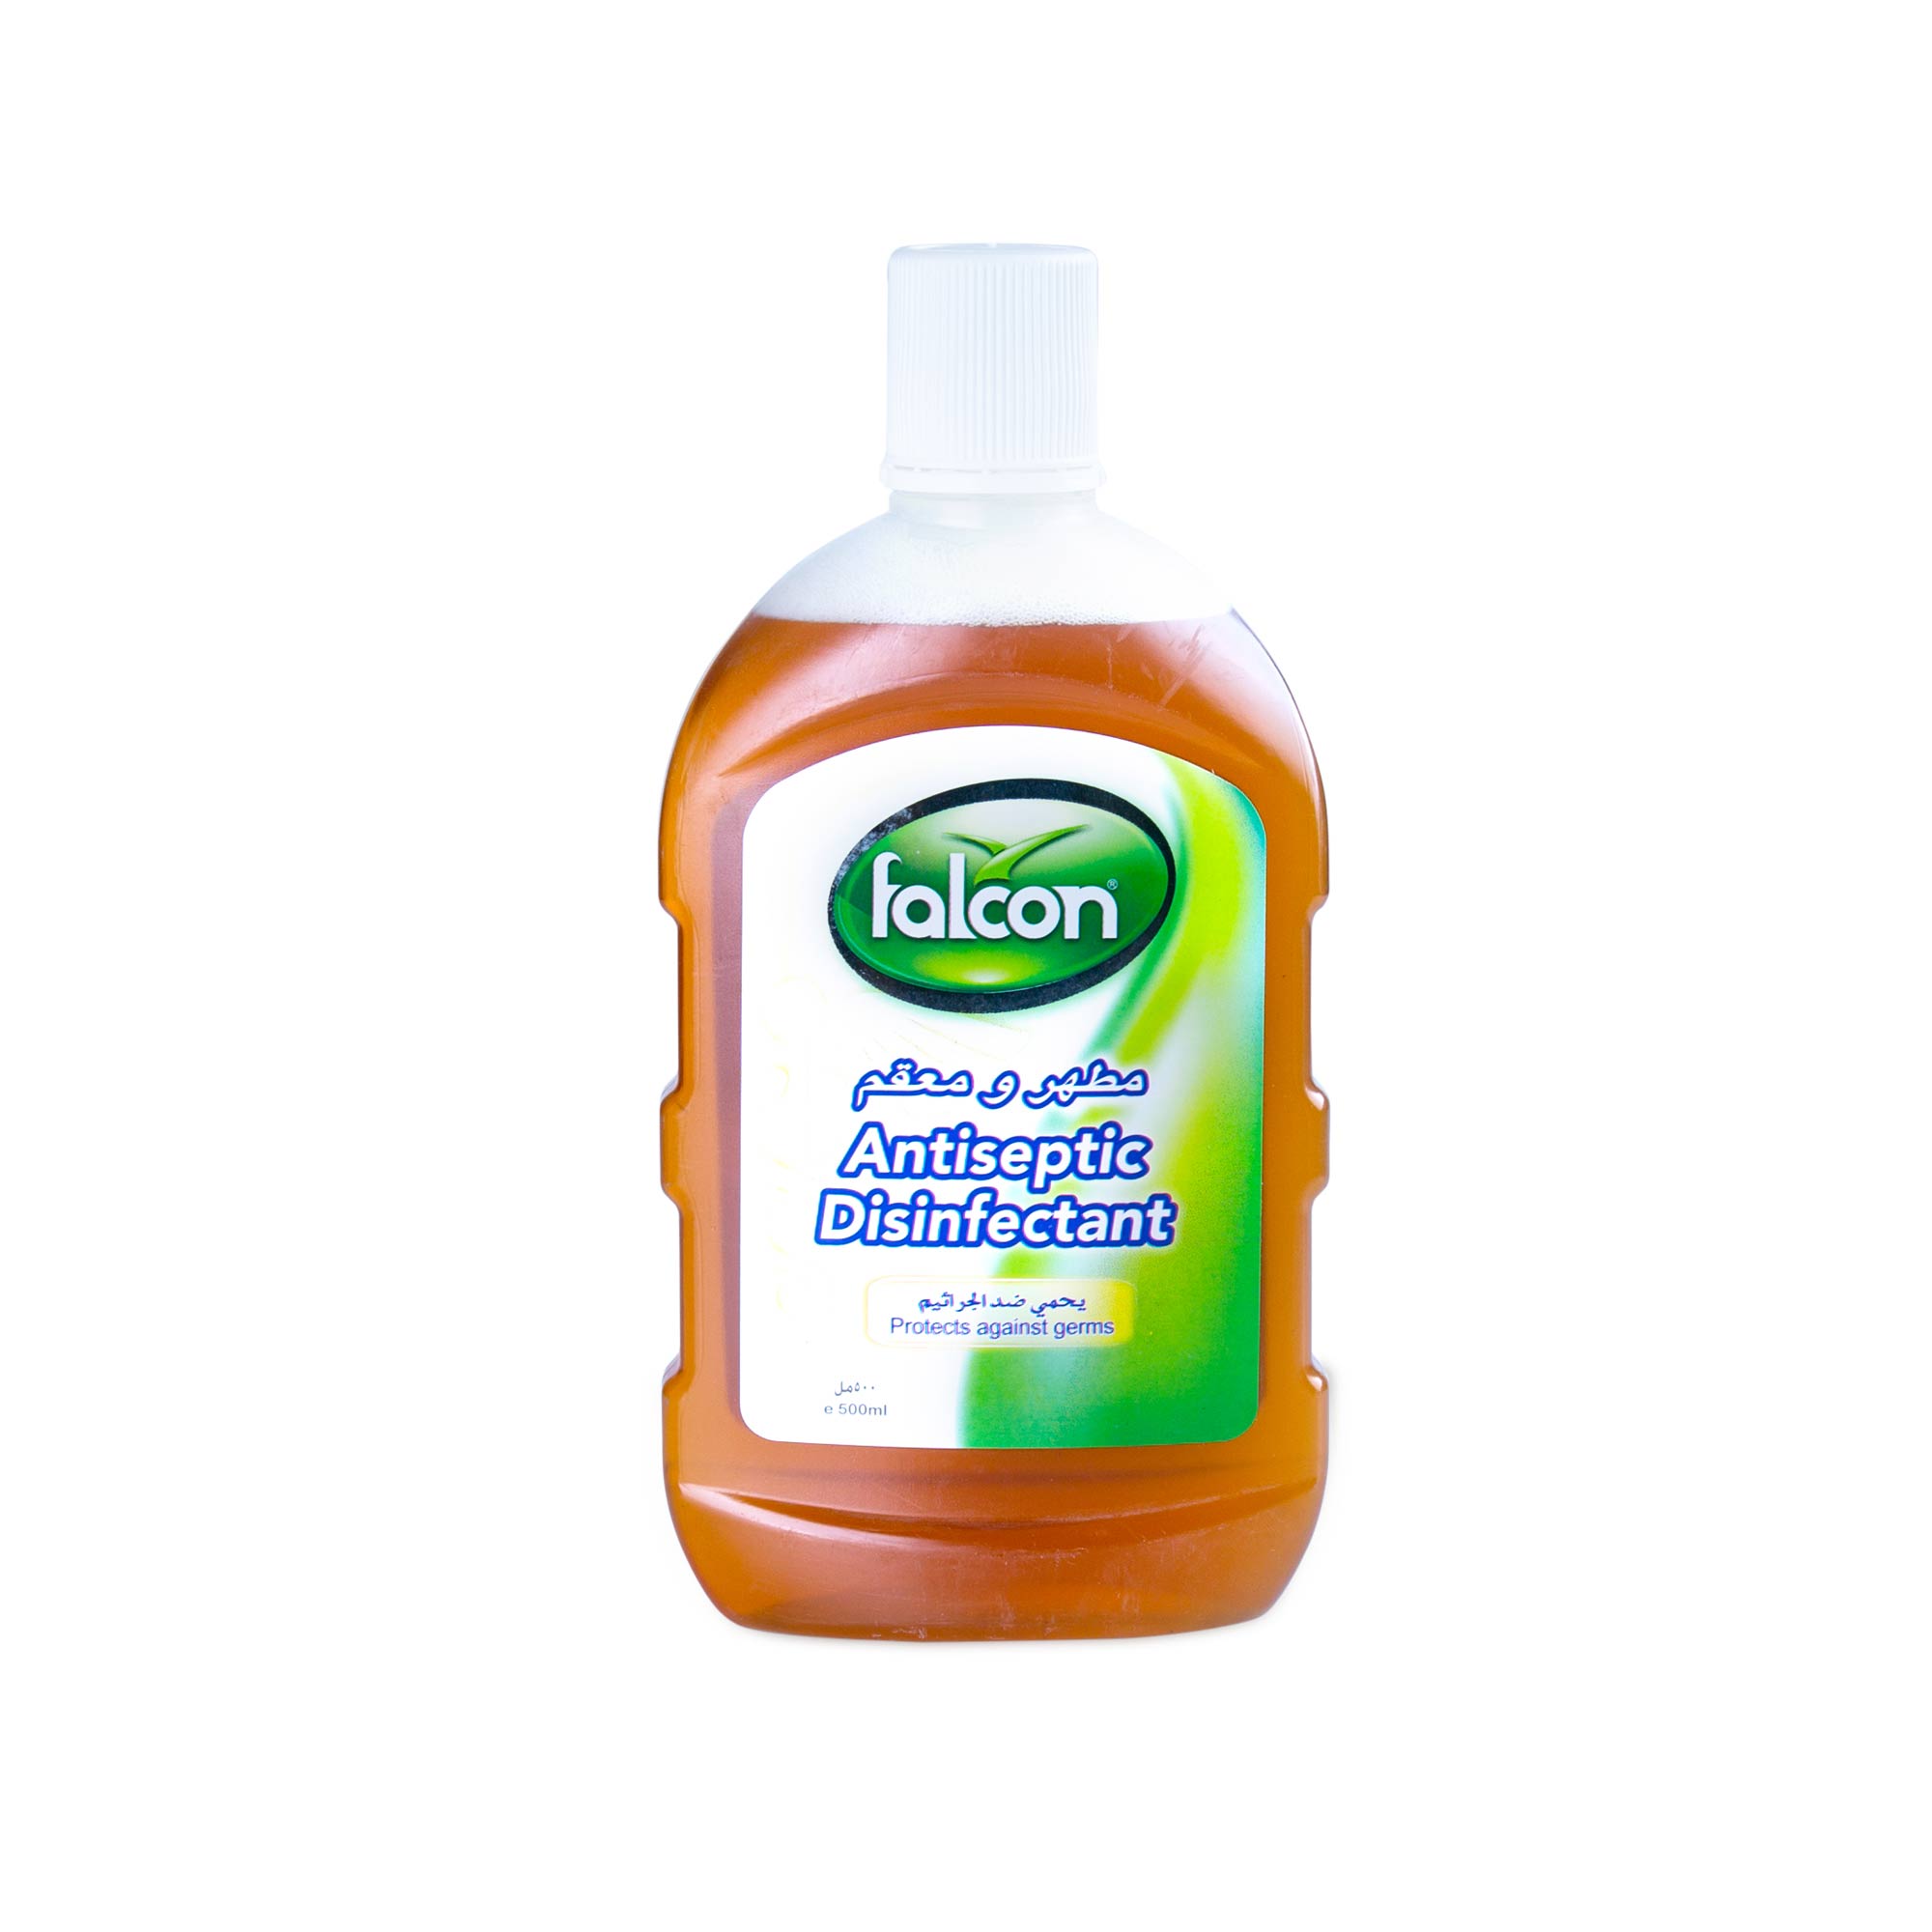 Falcon Antiseptic Disinfectant Liquid (500 ml Bottle)